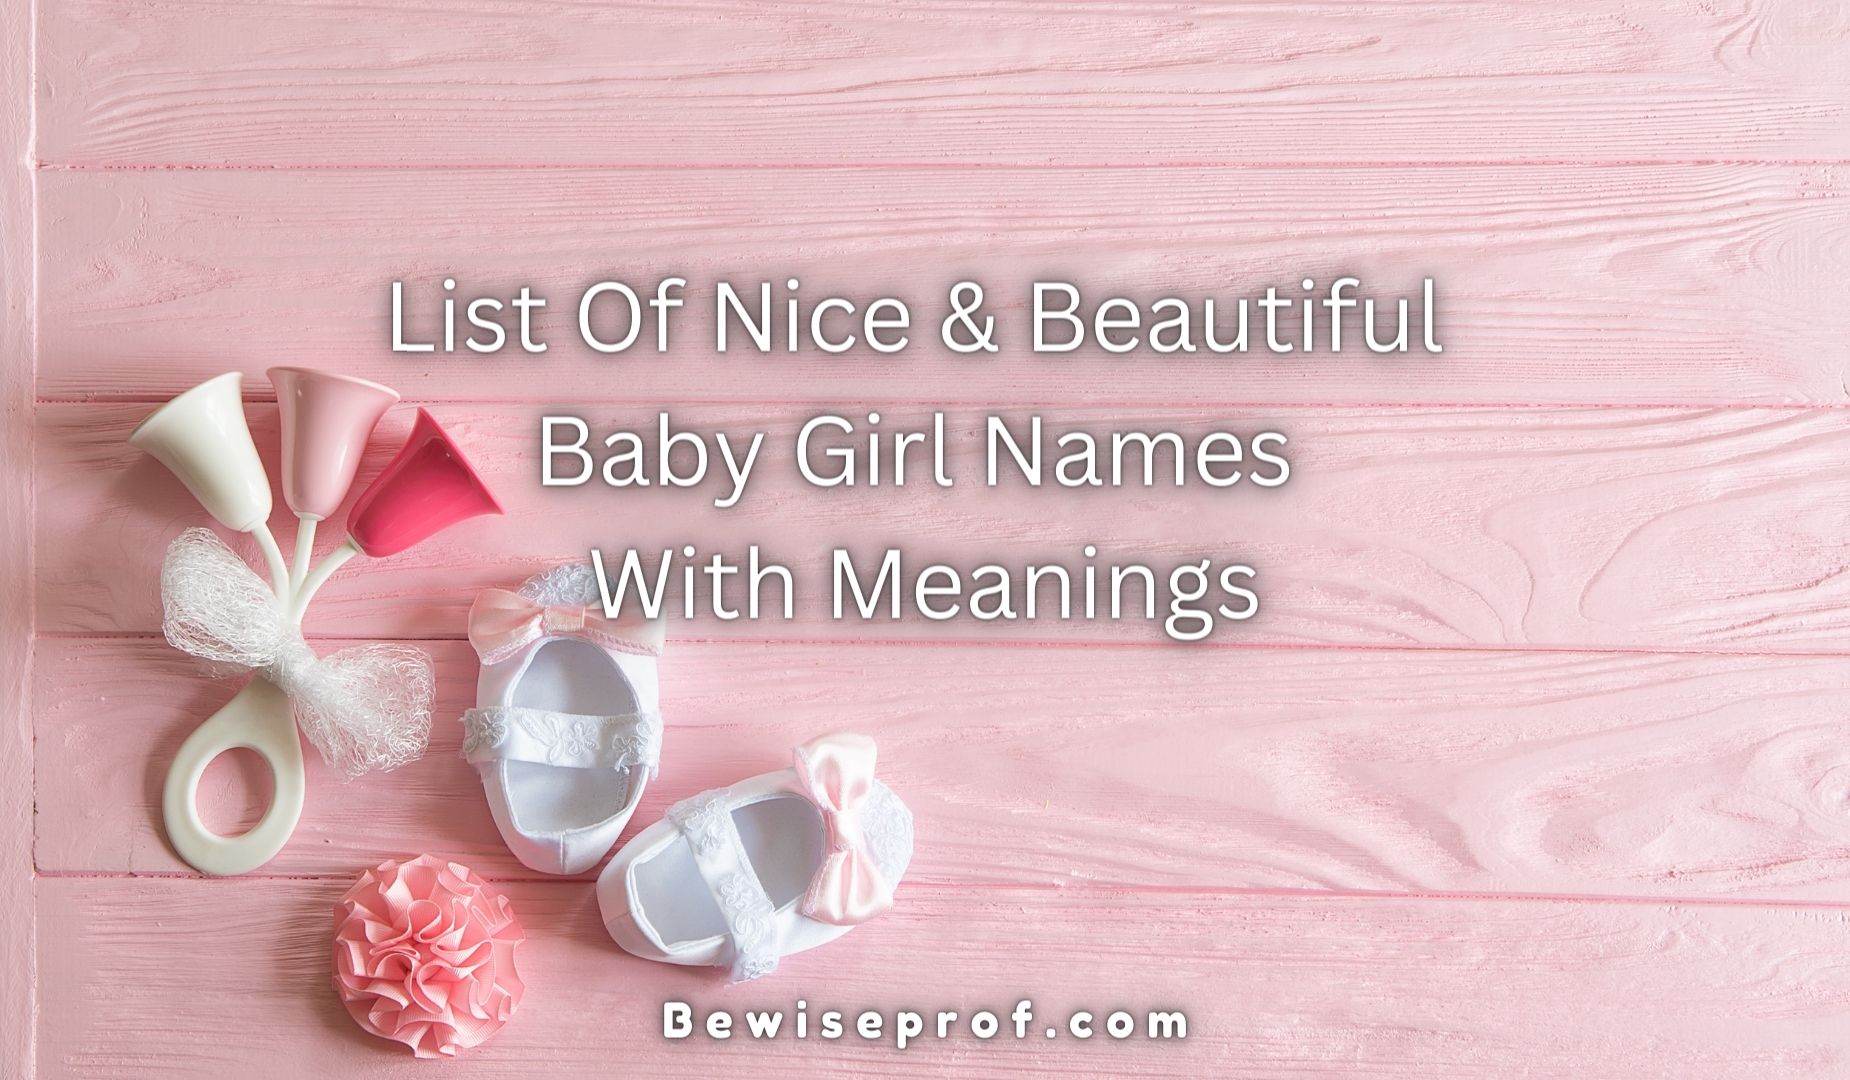 قائمة بأسماء طفلة لطيفة وجميلة مع المعاني